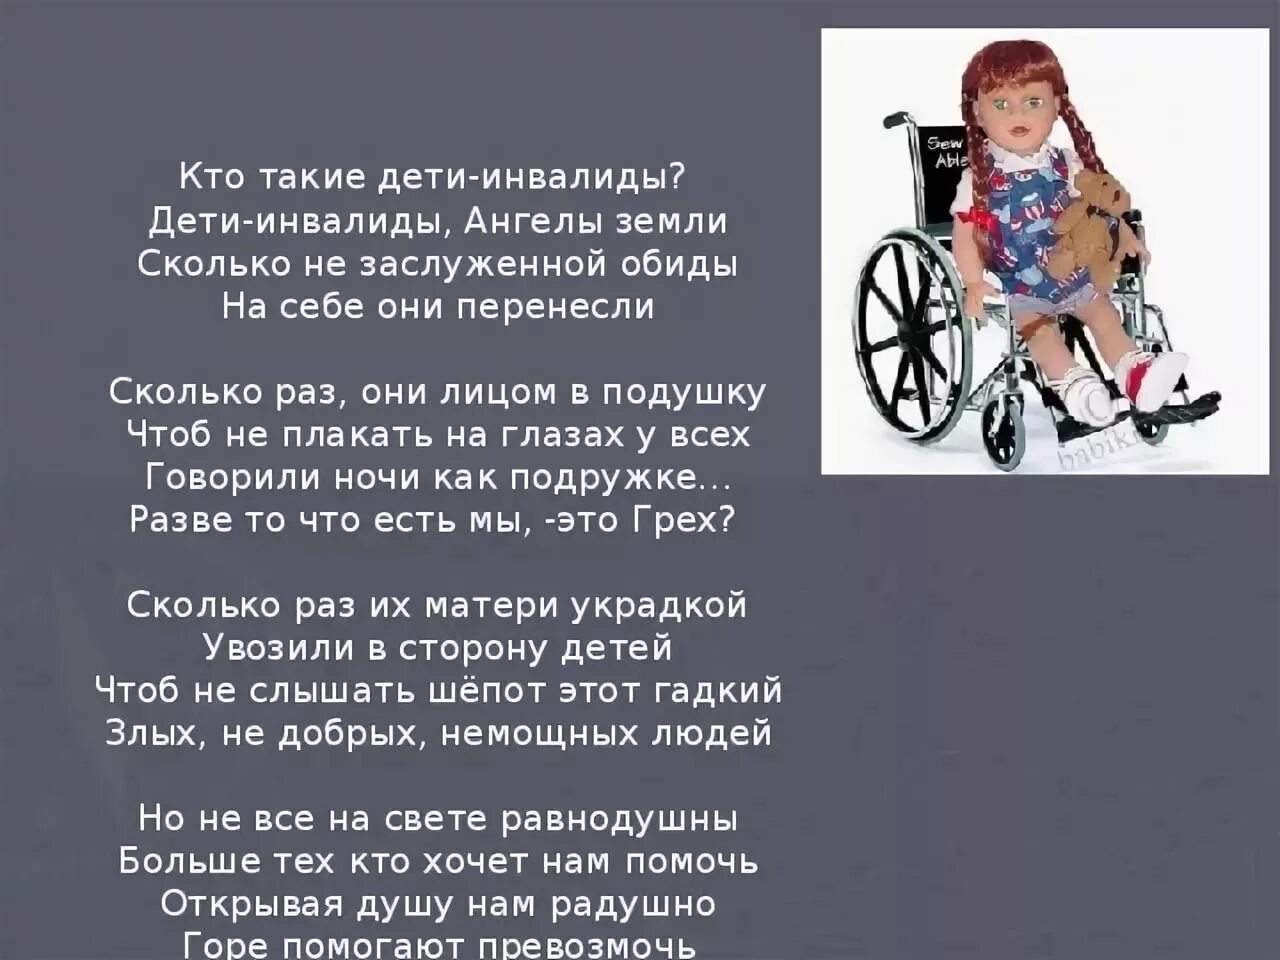 Инвалид и инвалид с детства разница. Цитаты про детей инвалидов. Стихи про инвалидов. Цитаты про инвалидов. Высказывание о детях инвалидах.